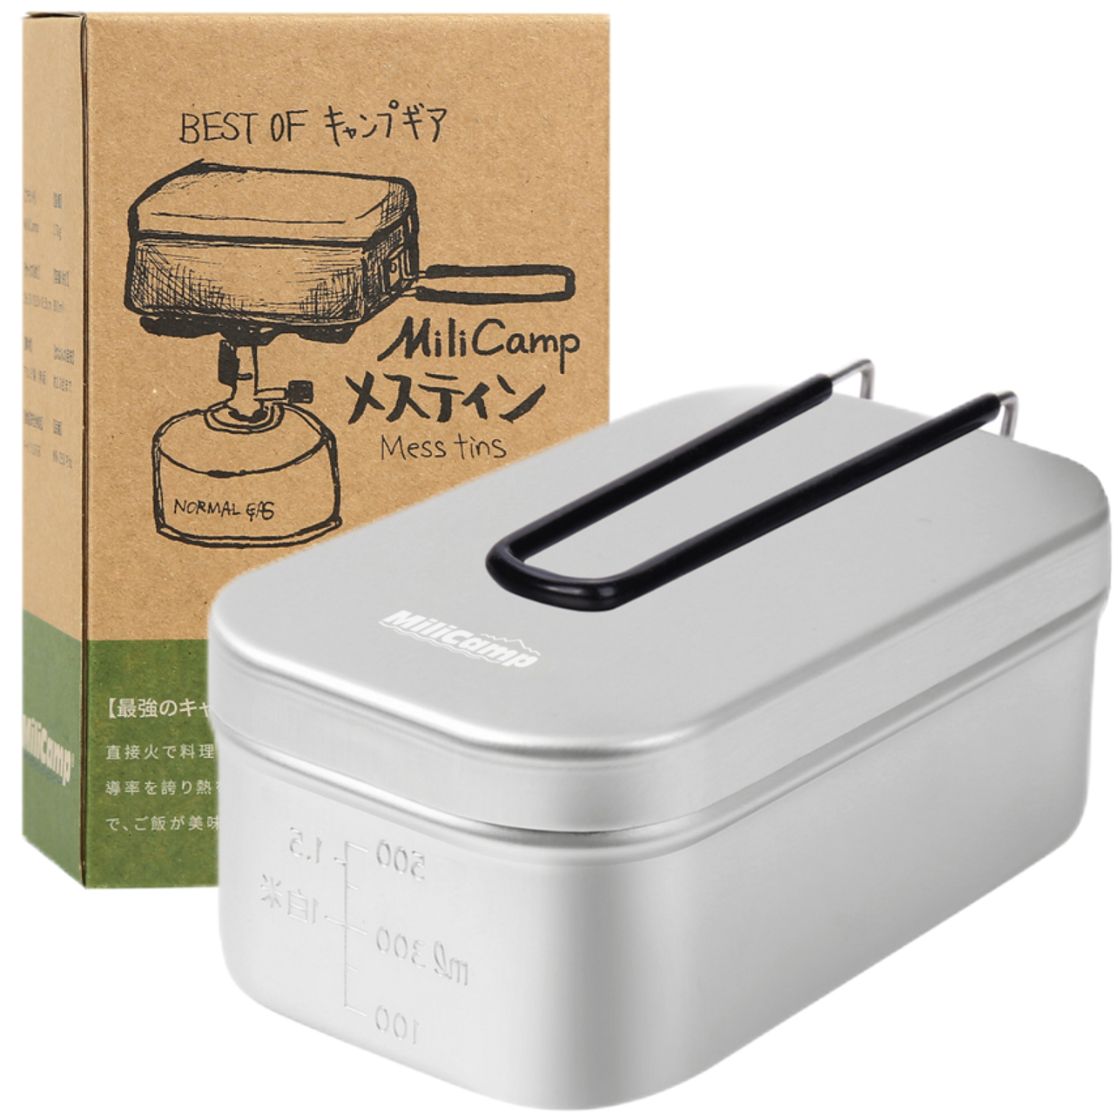 日式料理神器800ml便當盒露營煮飯便當盒家用單雙層 (8.3折)